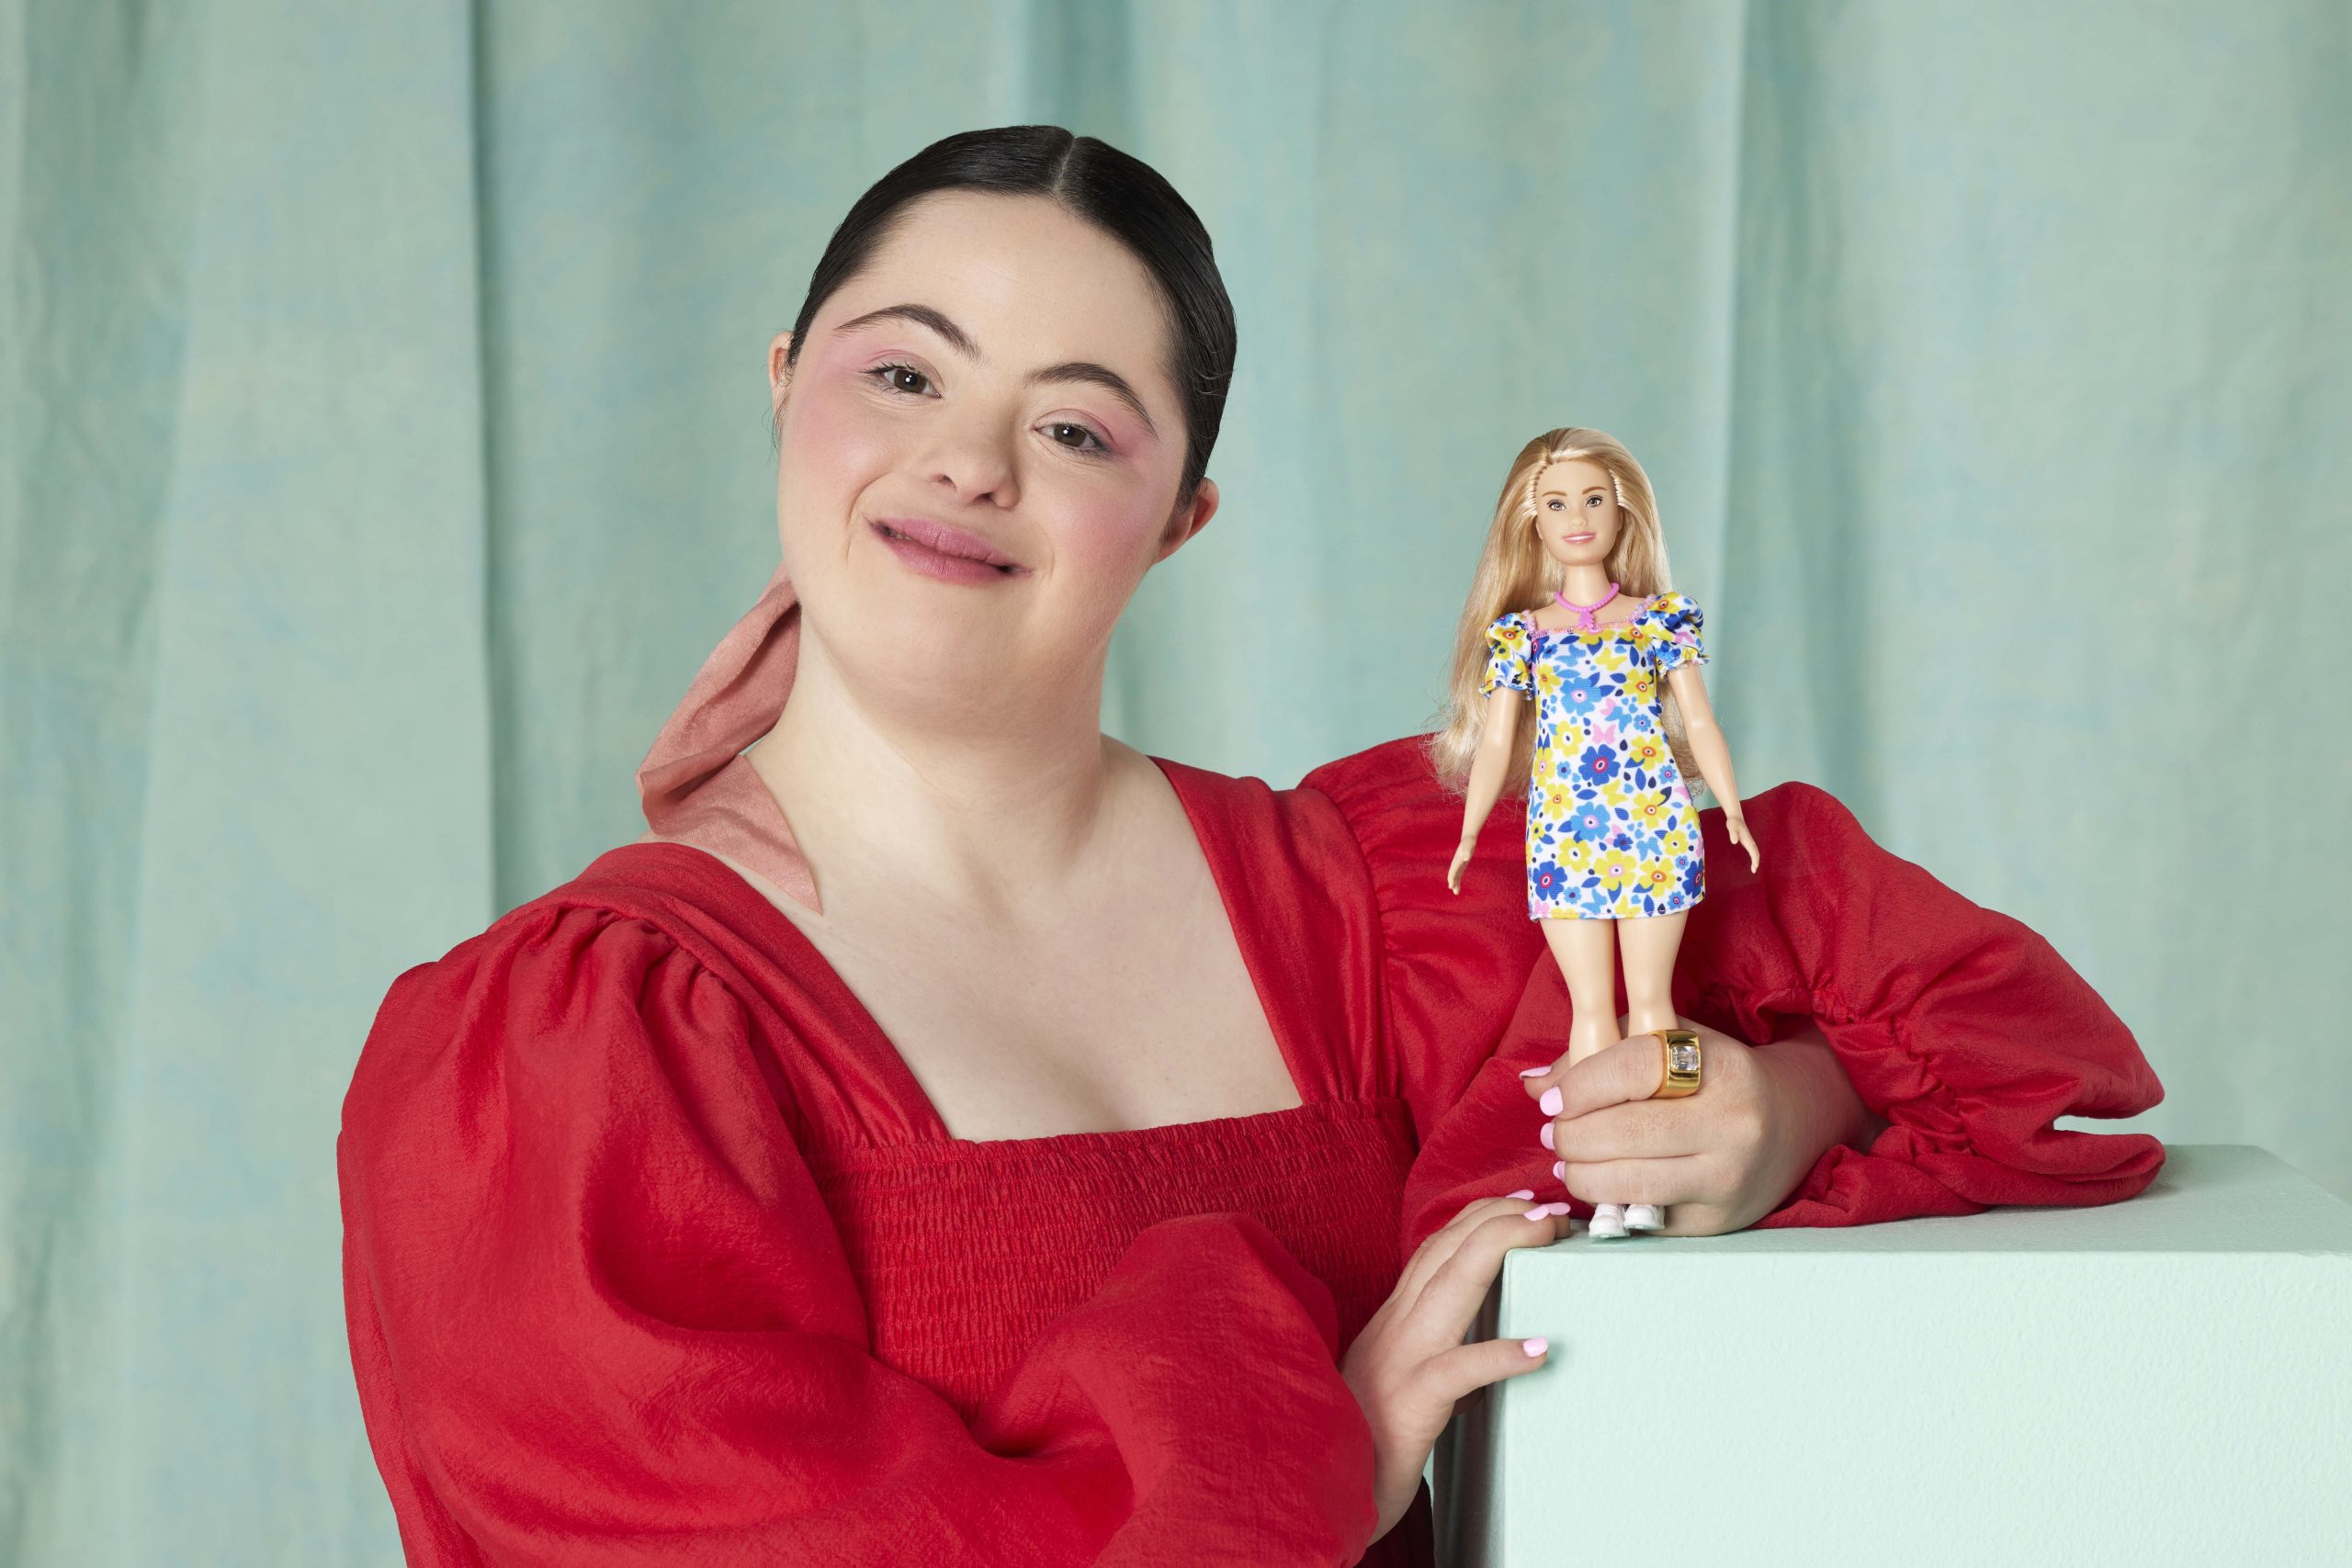 Η εταιρεία Mattel λανσάρει μια κούκλα Μπάρμπι με σύνδρομο Ντάουν